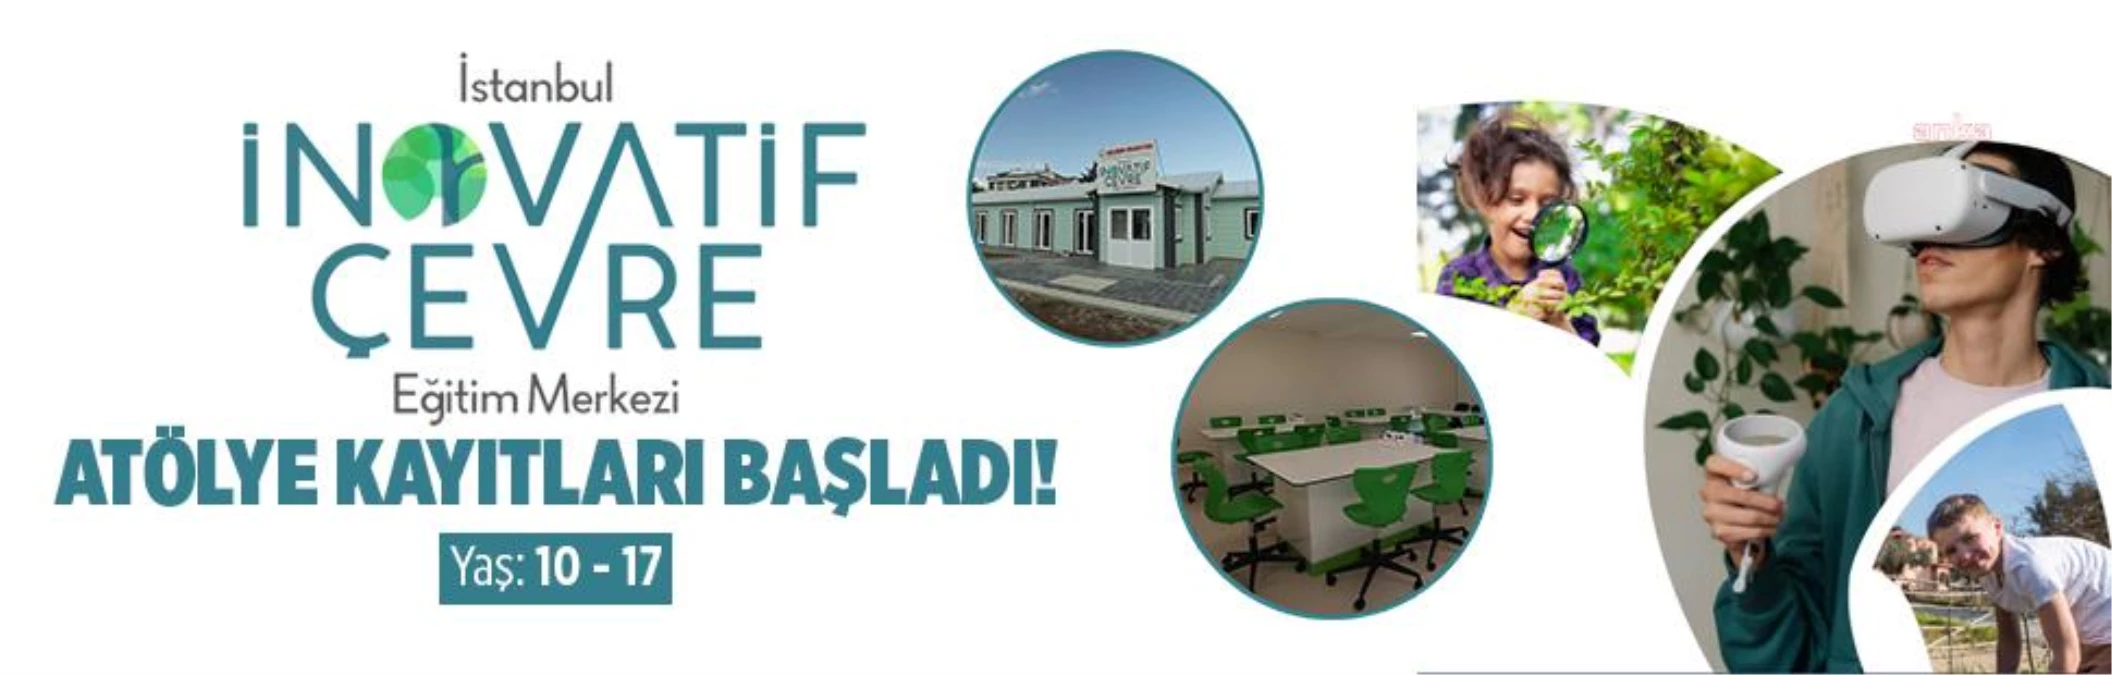 İstanbul İnovatif Etraf Eğitim Merkezi'nde Atölye Kayıtları Başladı